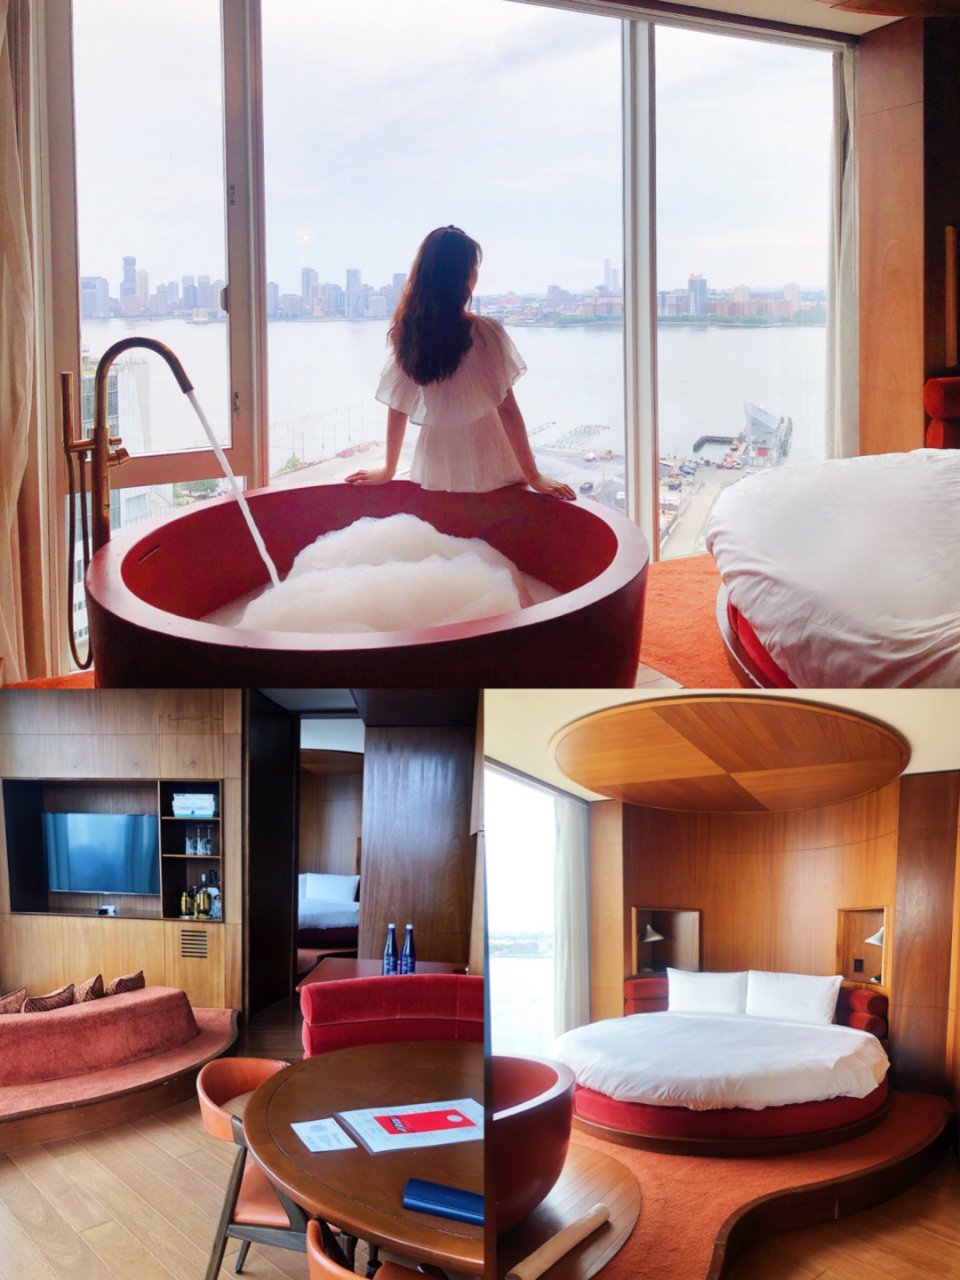 曼哈顿拥有茶杯浴缸🍵的无敌景观酒店🏨...